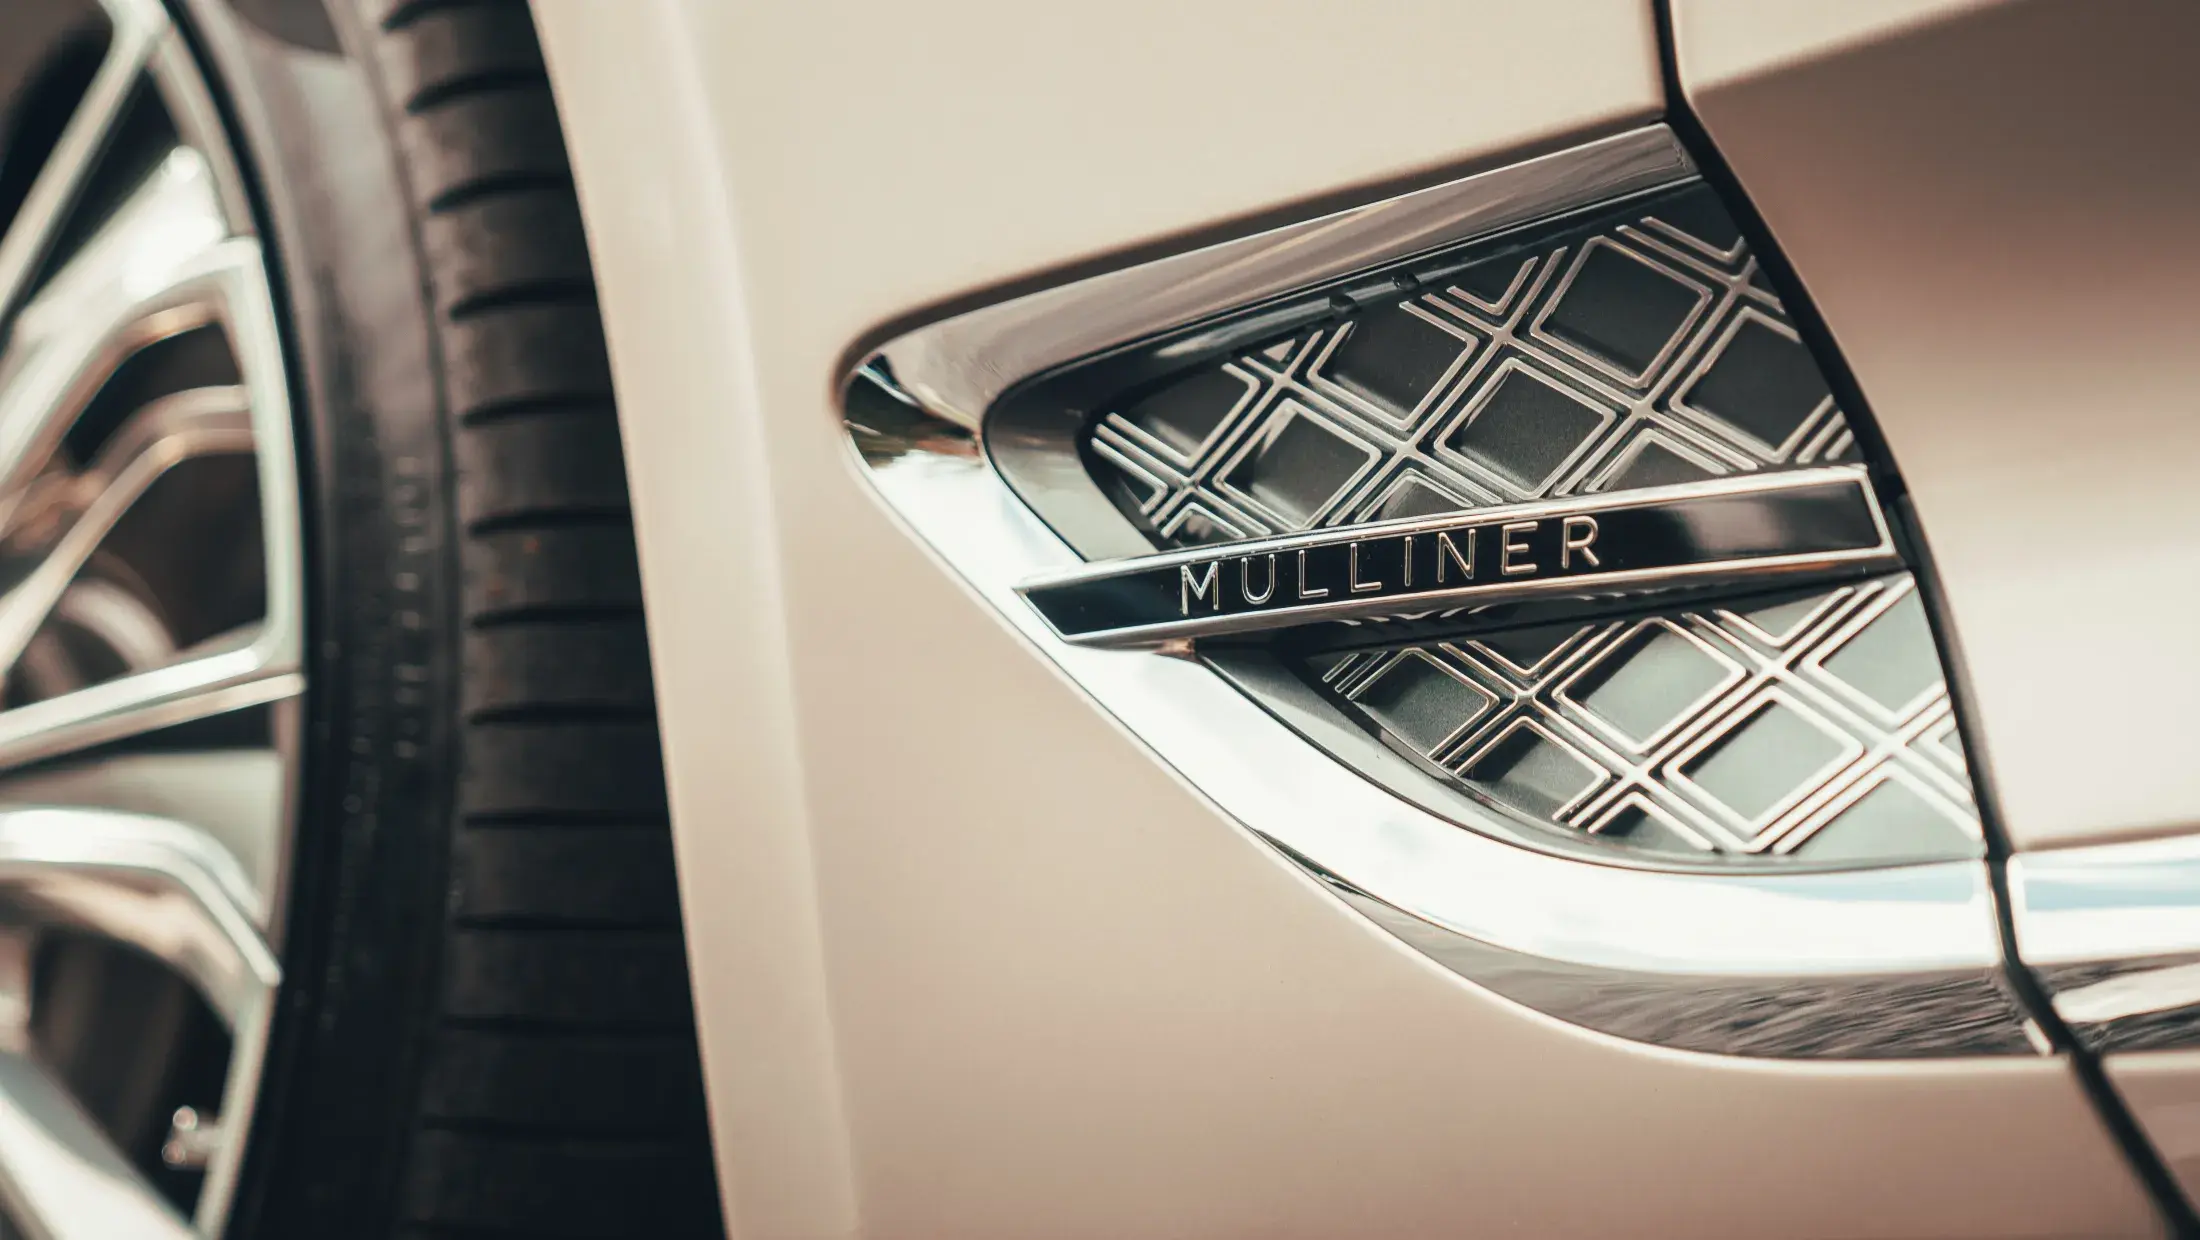 Continental GT Mulliner V8